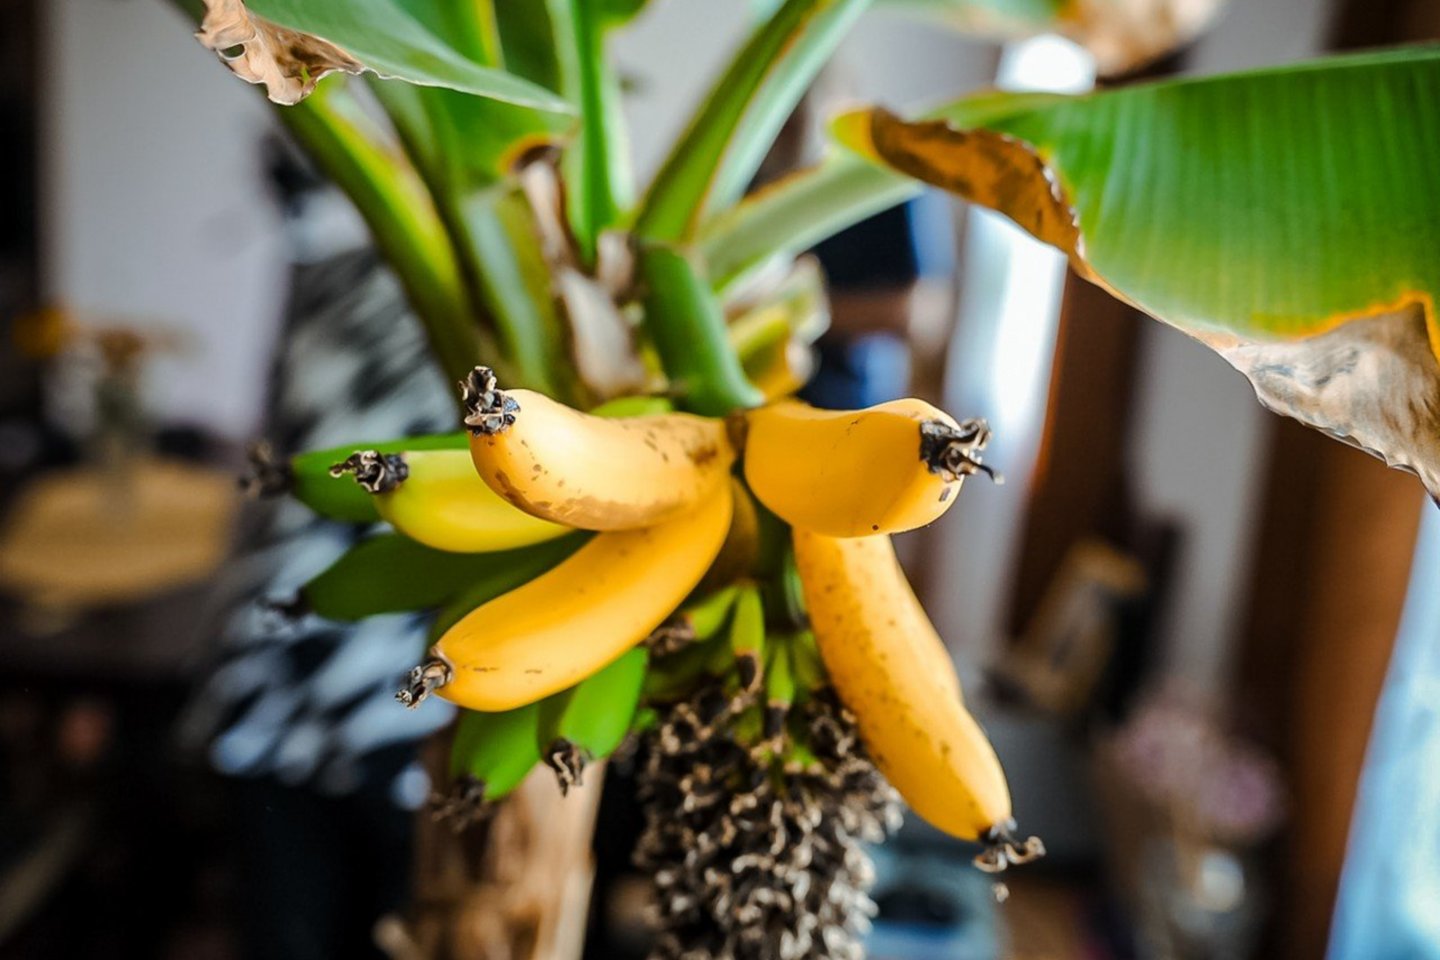 Panevėžio rajono Gailiūnų kaimo gyventoja Marytė Manionienė ragauja saldžius pačios užauginto bananmedžio vaisius.<br>Ž.Večiorkutės/jp.lt nuotr.